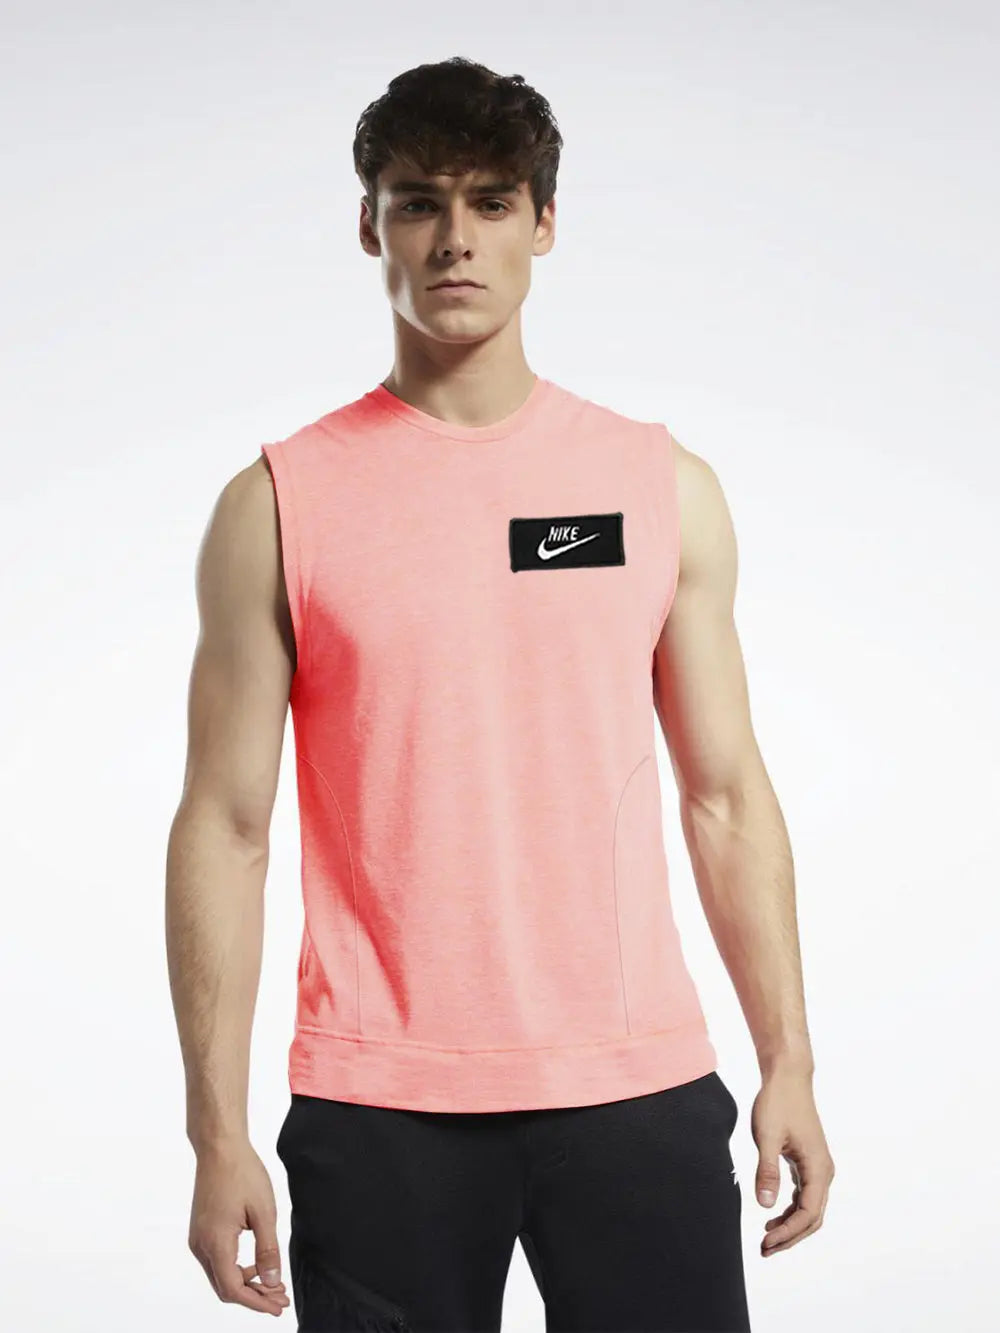 NK Terry Fleece Sleeveless Sweatshirt For Men Pink-SP85